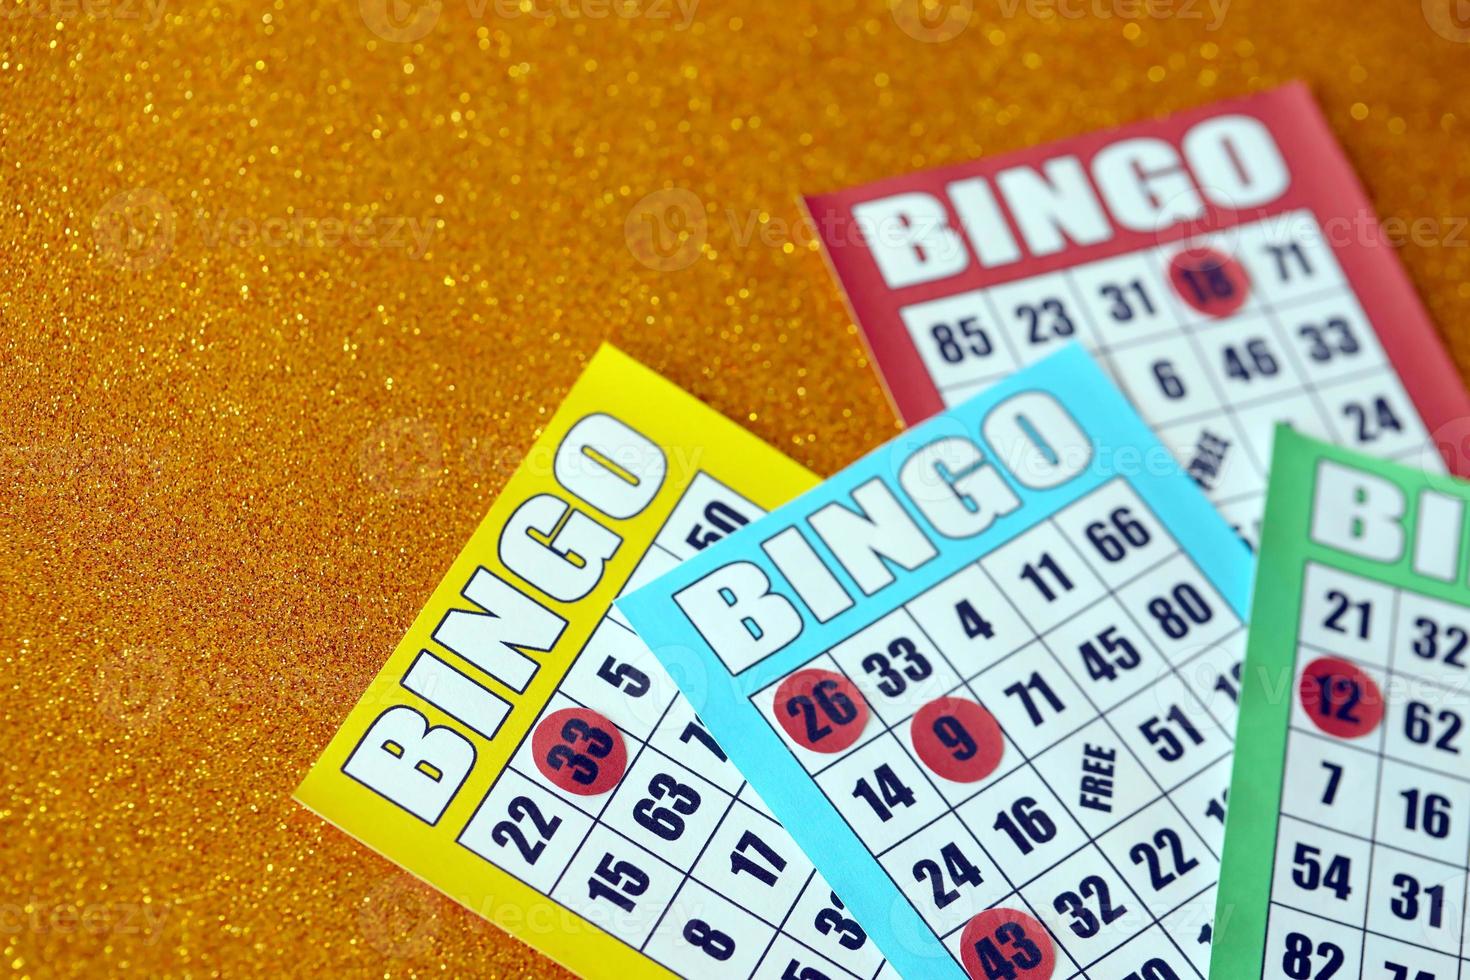 de nombreuses planches de bingo colorées ou des cartes à jouer pour gagner des jetons. classique américain ou canadien cinq à cinq cartes de bingo sur fond clair photo